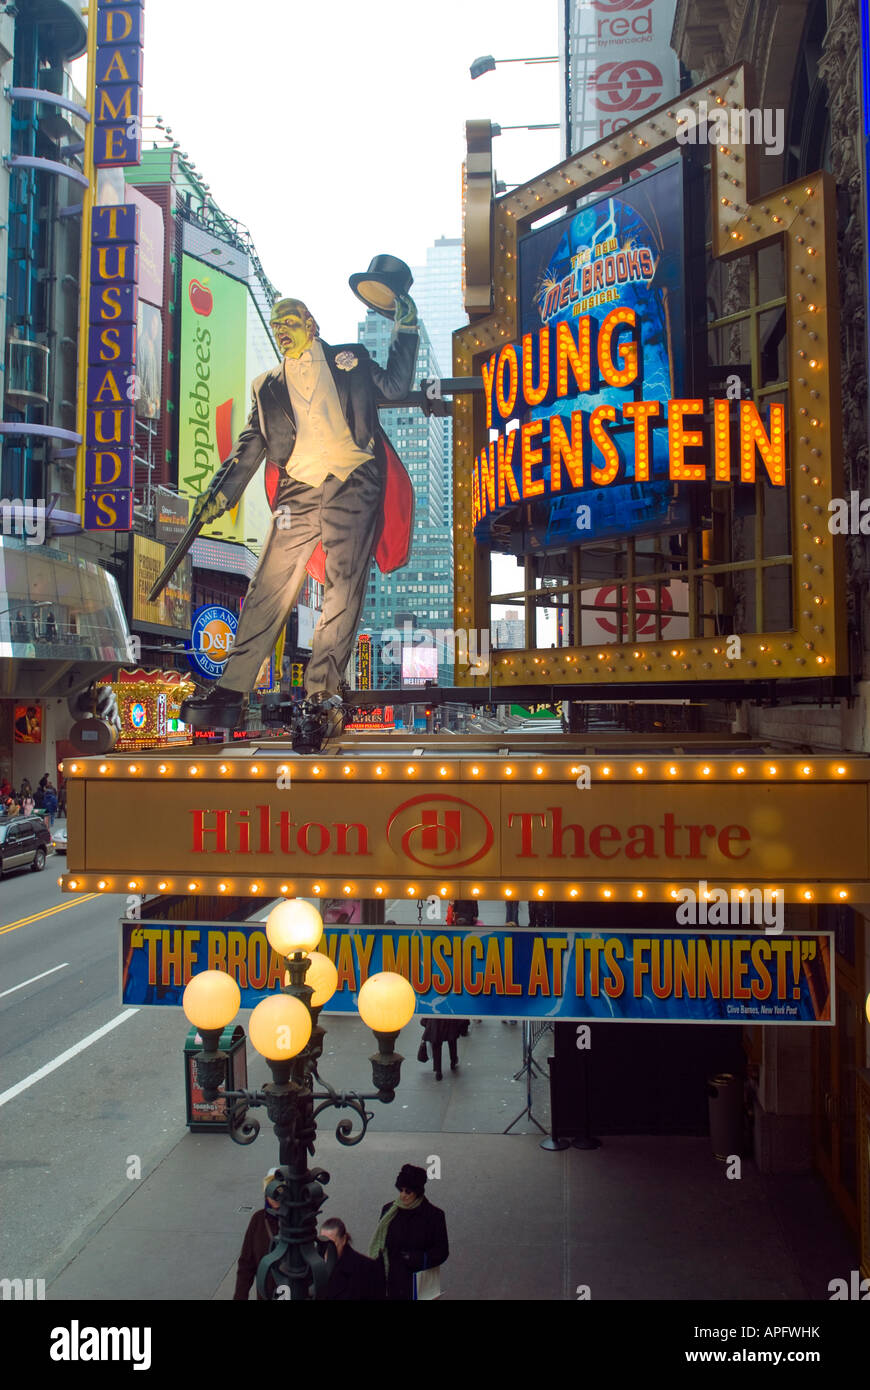 Le chapiteau pour la nouvelle comédie musicale de Mel Brooks Young Frankenstein est vue sur l'hôtel Hilton Theatre sur 42nd Street à Times Square à New York Banque D'Images